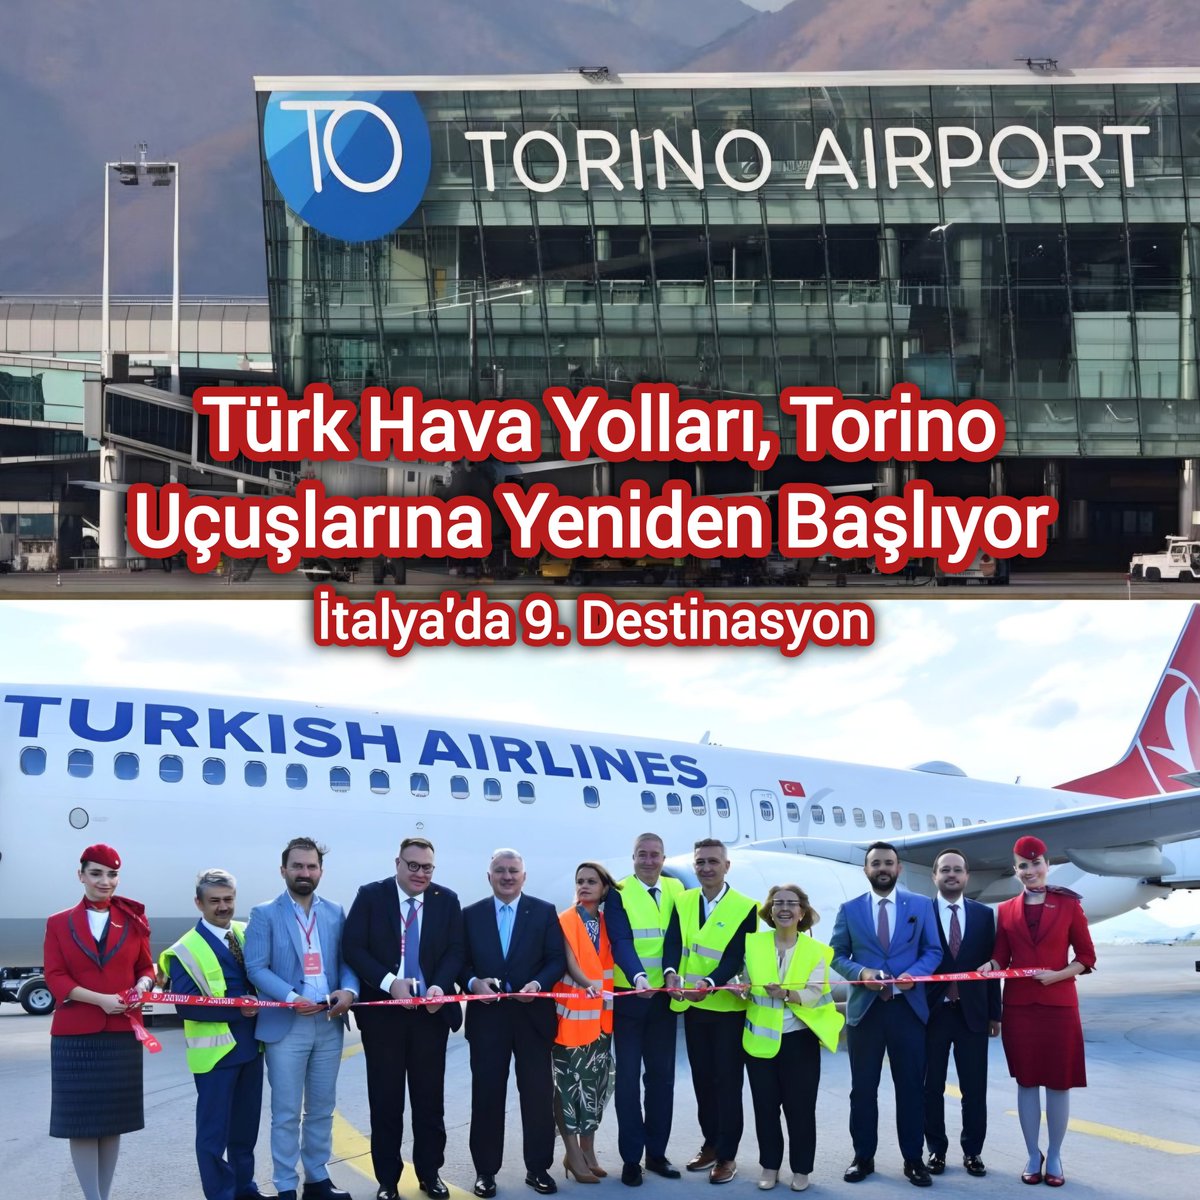 Yeni Rota: Torino 🇮🇹

• Türk Hava Yolları, 2018'de durdurduğu İstanbul - Torino uçuşlarını tekrar başlatıyor.

• 10 Temmuz'dan itibaren günde bir kez olmak üzere iki şehir arasında günlük uçuş gerçekleştirecek. Bu uçuşlarda Boeing B737 tipi uçaklar kullanılacak.

• Böylece